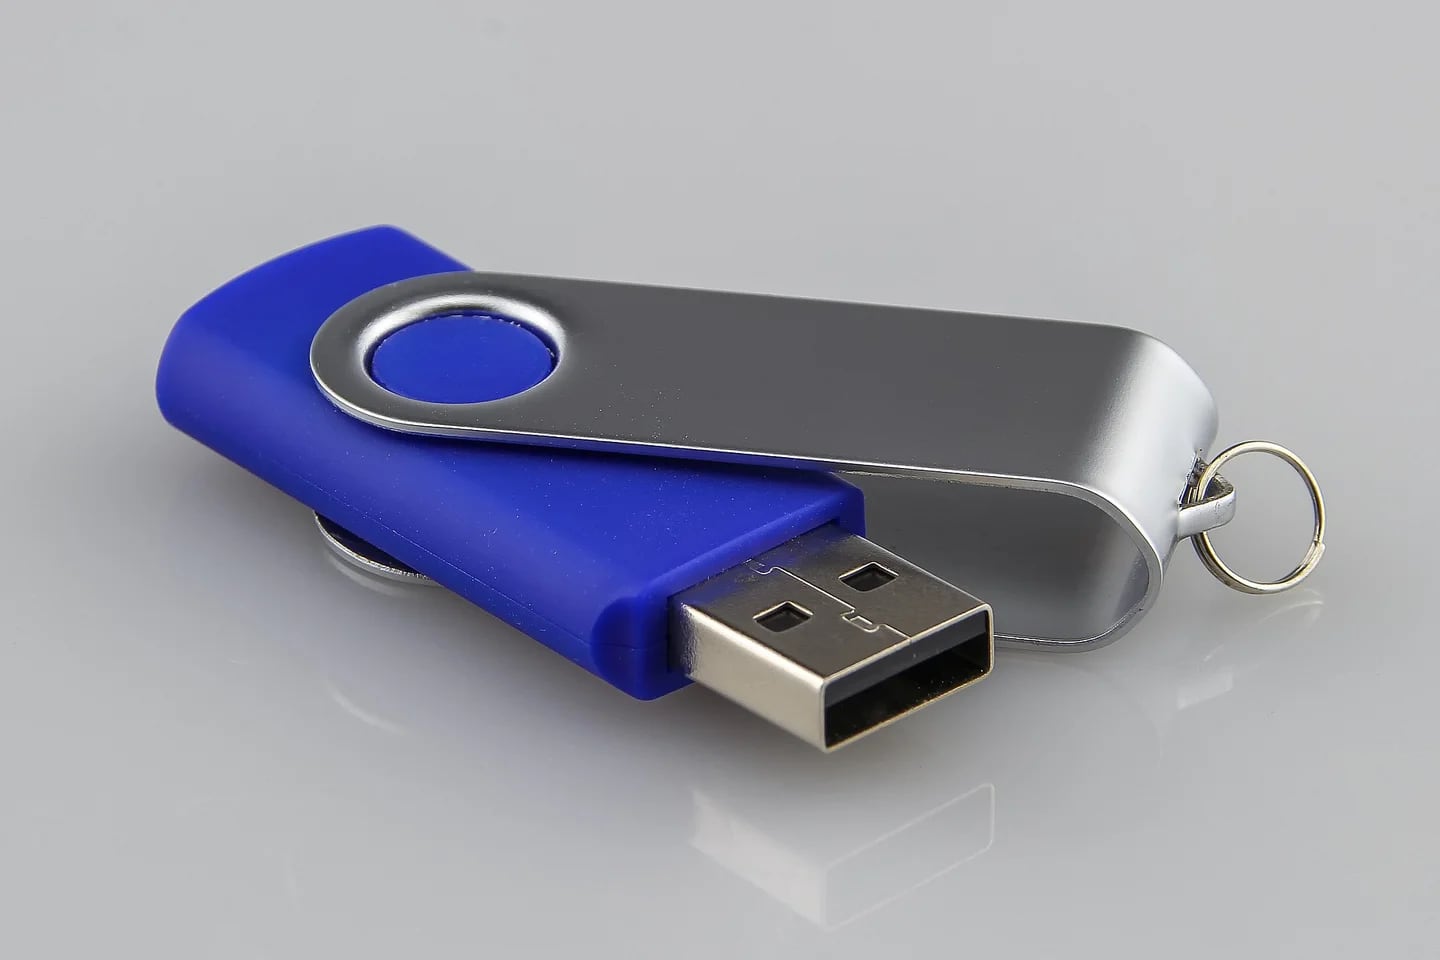 Cómo detectar una USB Killer y cómo proteger su PC de estos dispositivos? -  Tecnología 